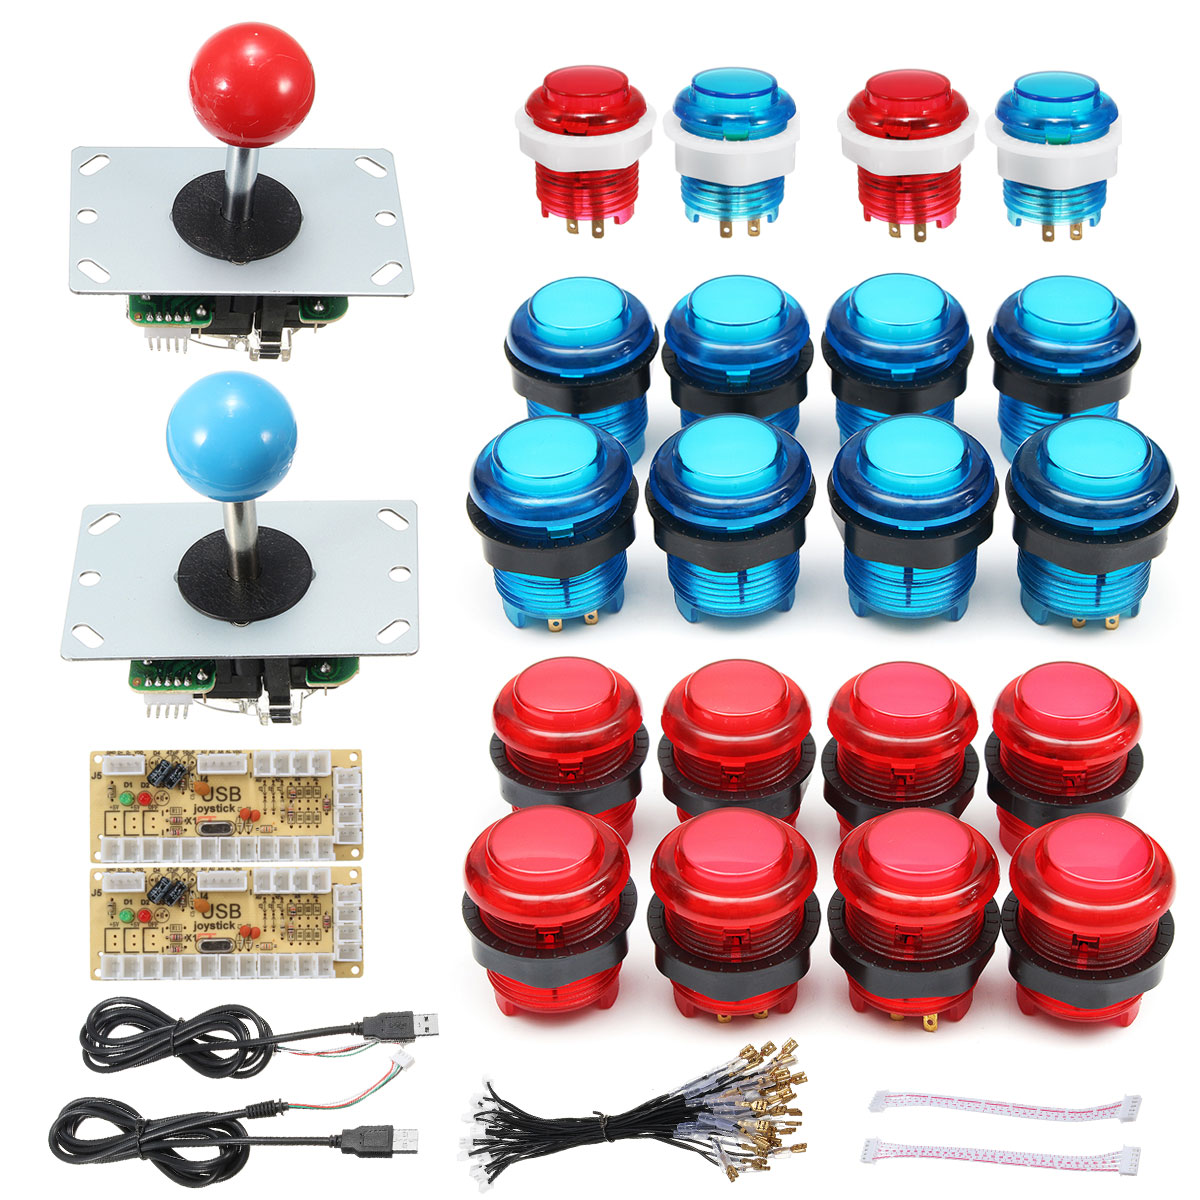 Diy Joystick Arcade Kits 2 Spelers Met 20 Led Arcade Knoppen + 2 Joysticks + 2 Usb Encoder Kit + kabels Arcade Game Onderdelen Set: 1